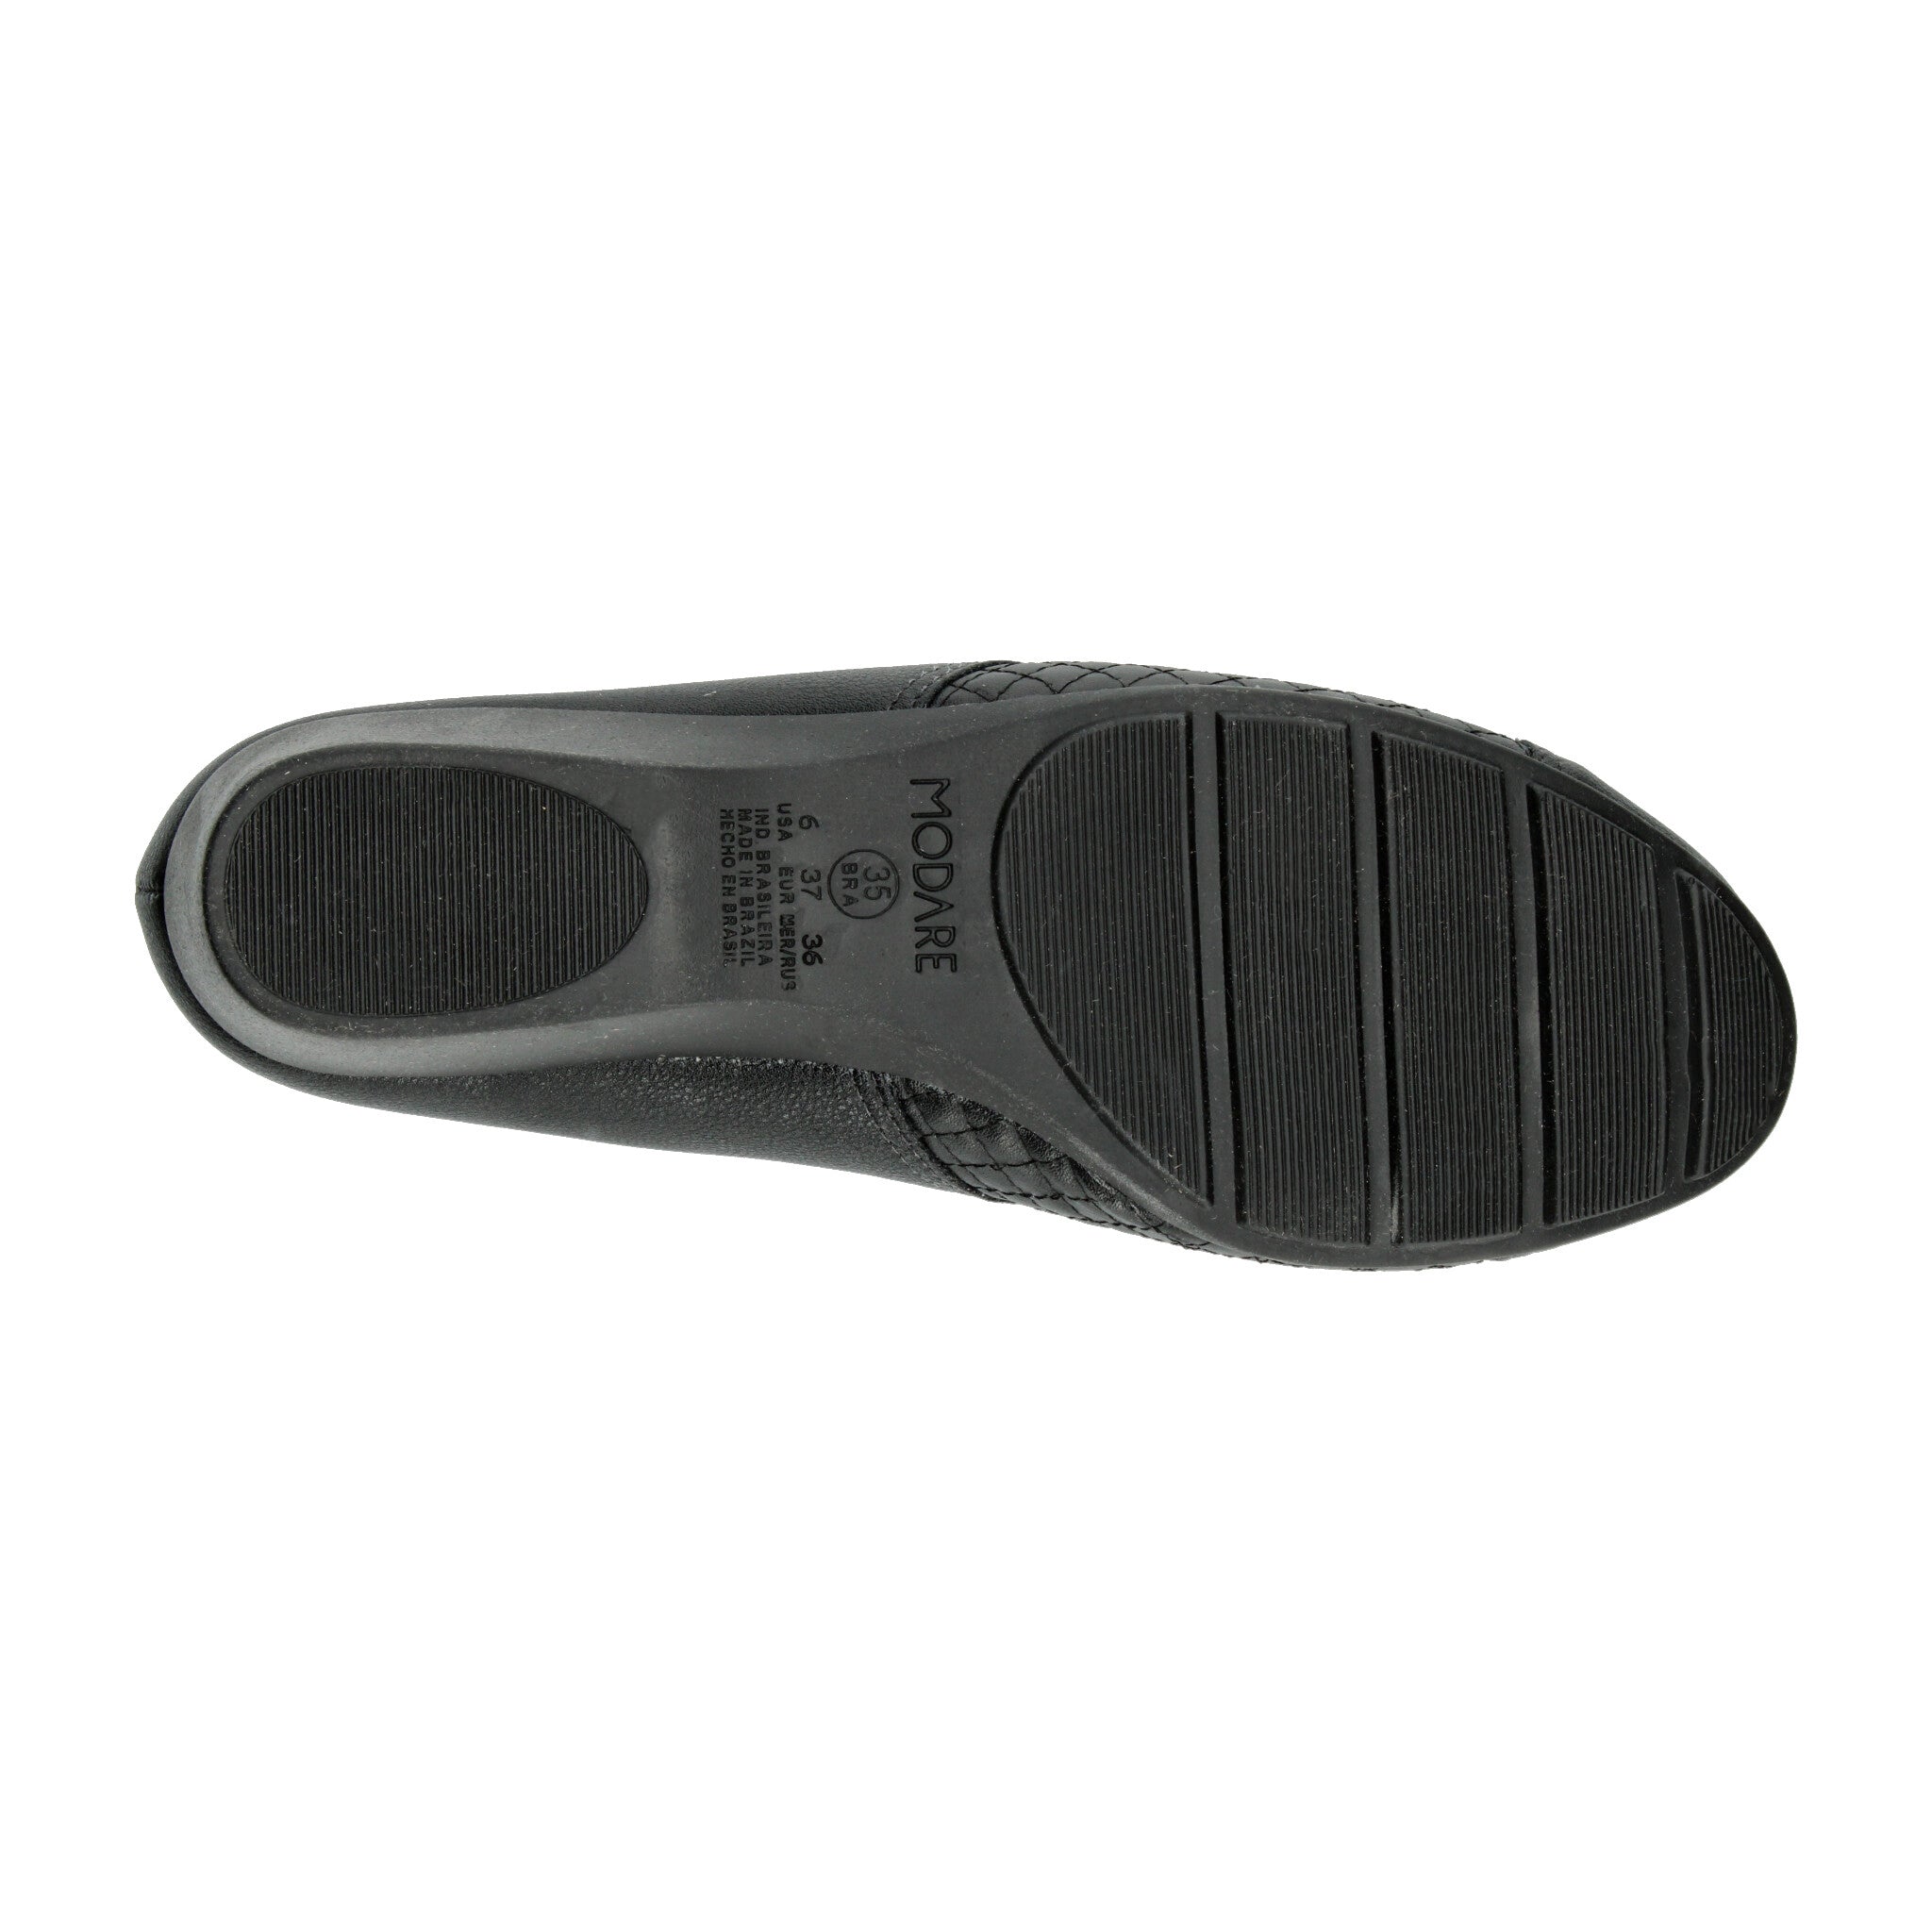 Zapato Confort Modare Negro para Mujer [MOD32] MODARE 